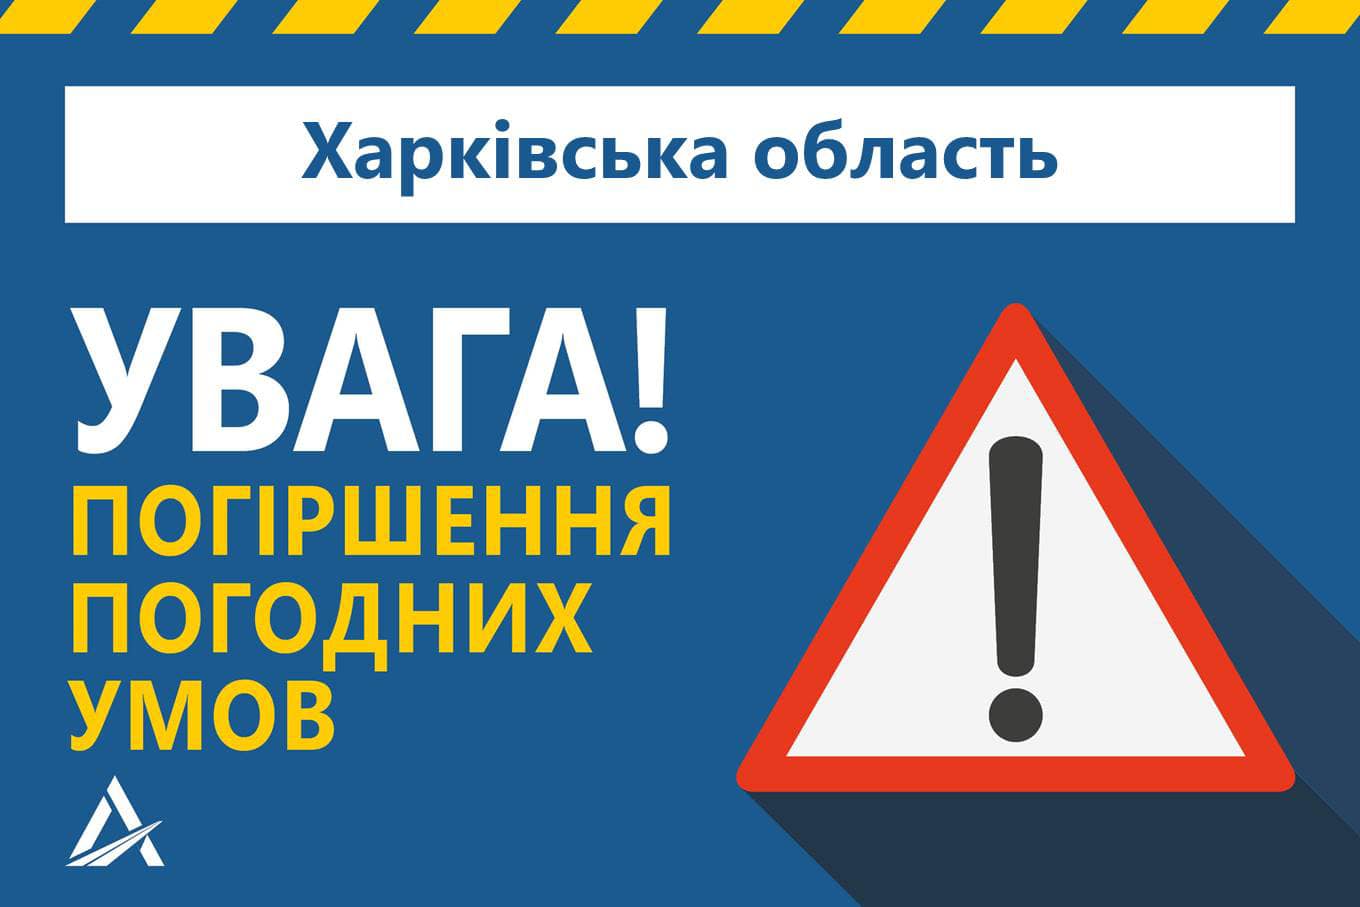 Водіїв попереджають про погіршення погодних умов у Харківській області: де перечекати негоду